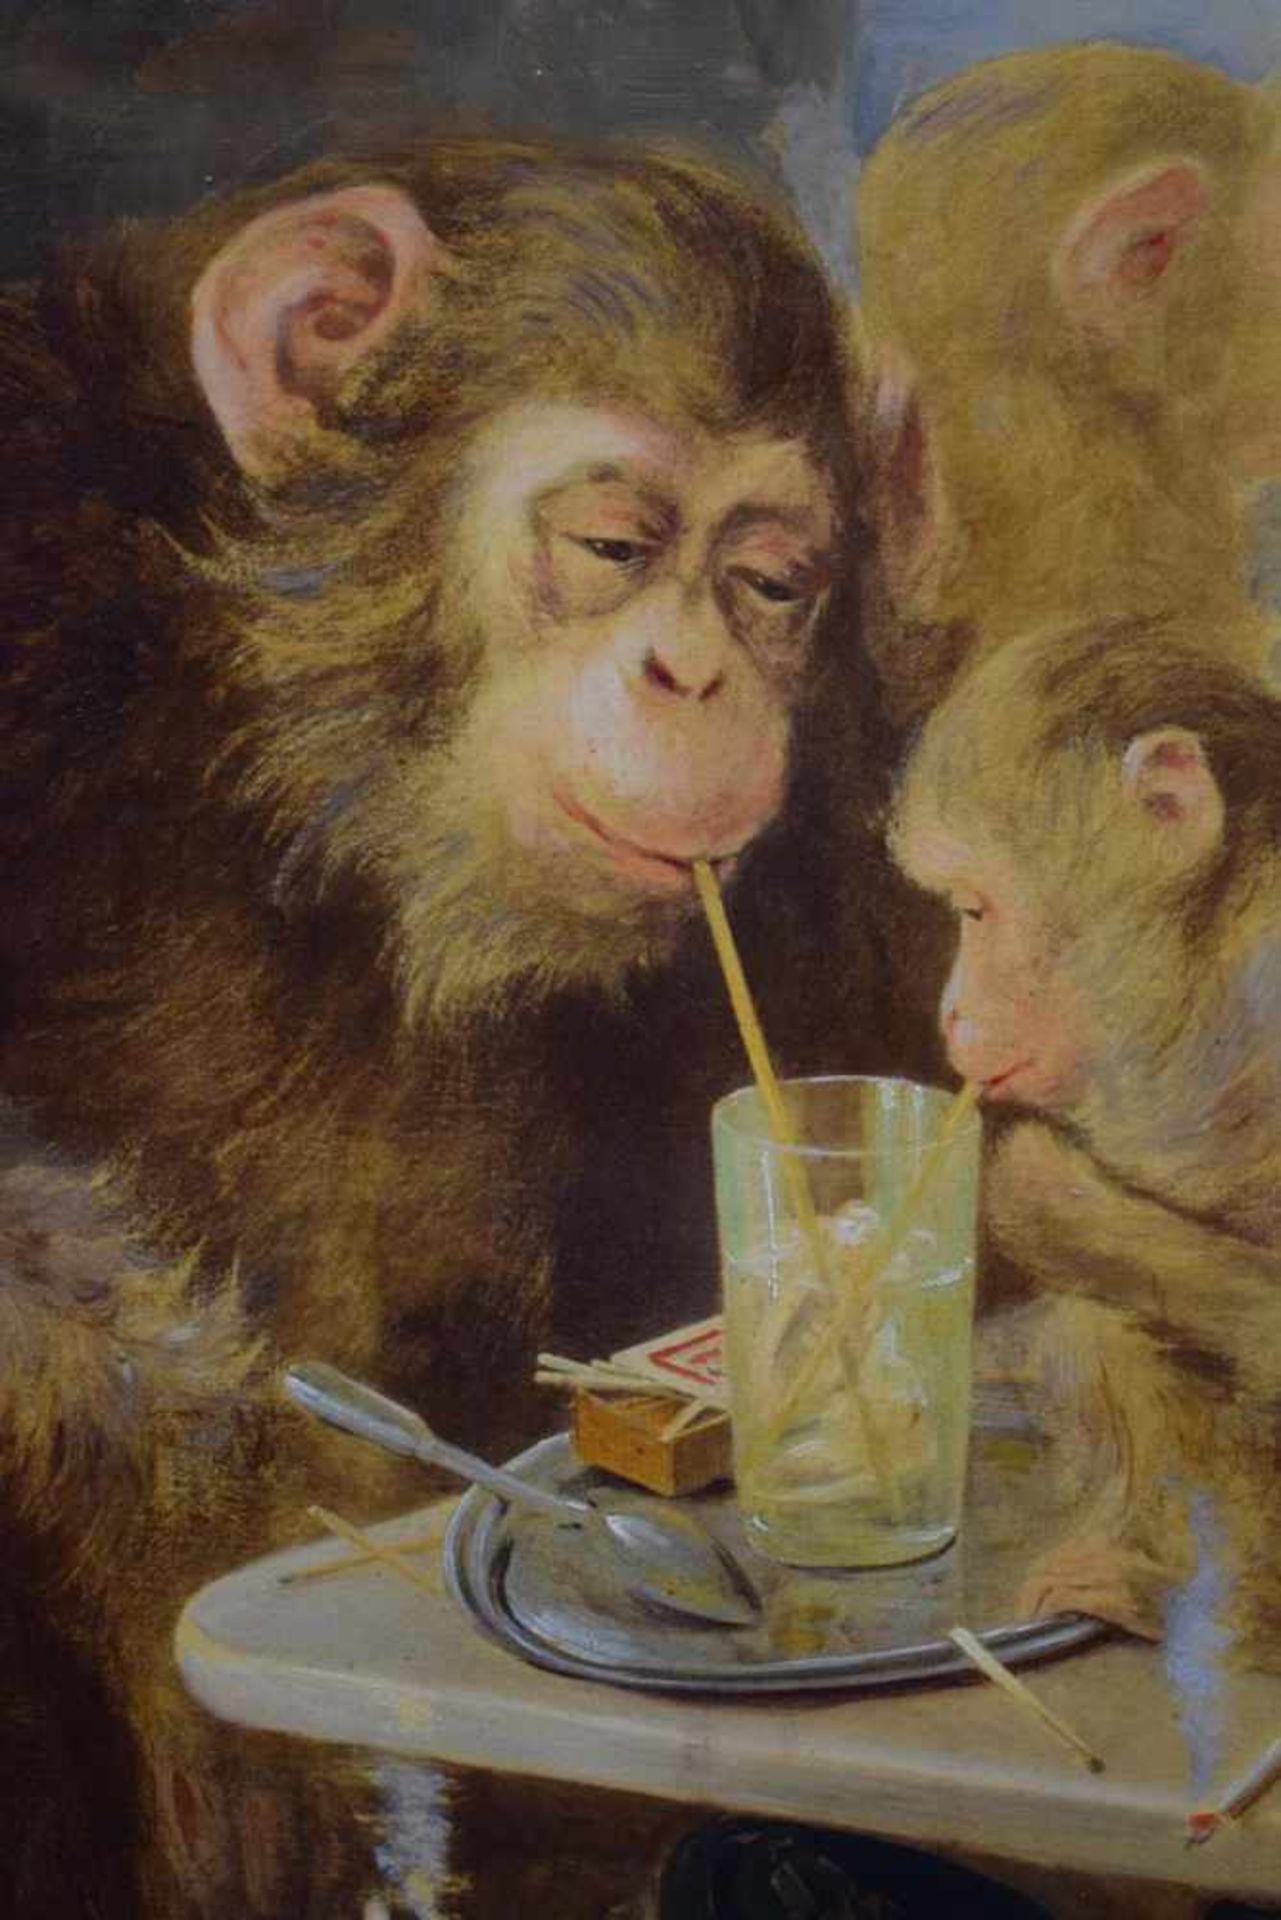 Anonymer Französischer Künstler des 19.Jh. "Die Affengruppe"Öl auf Leinwand, Alter 19.Jh. Signiert - Bild 3 aus 5